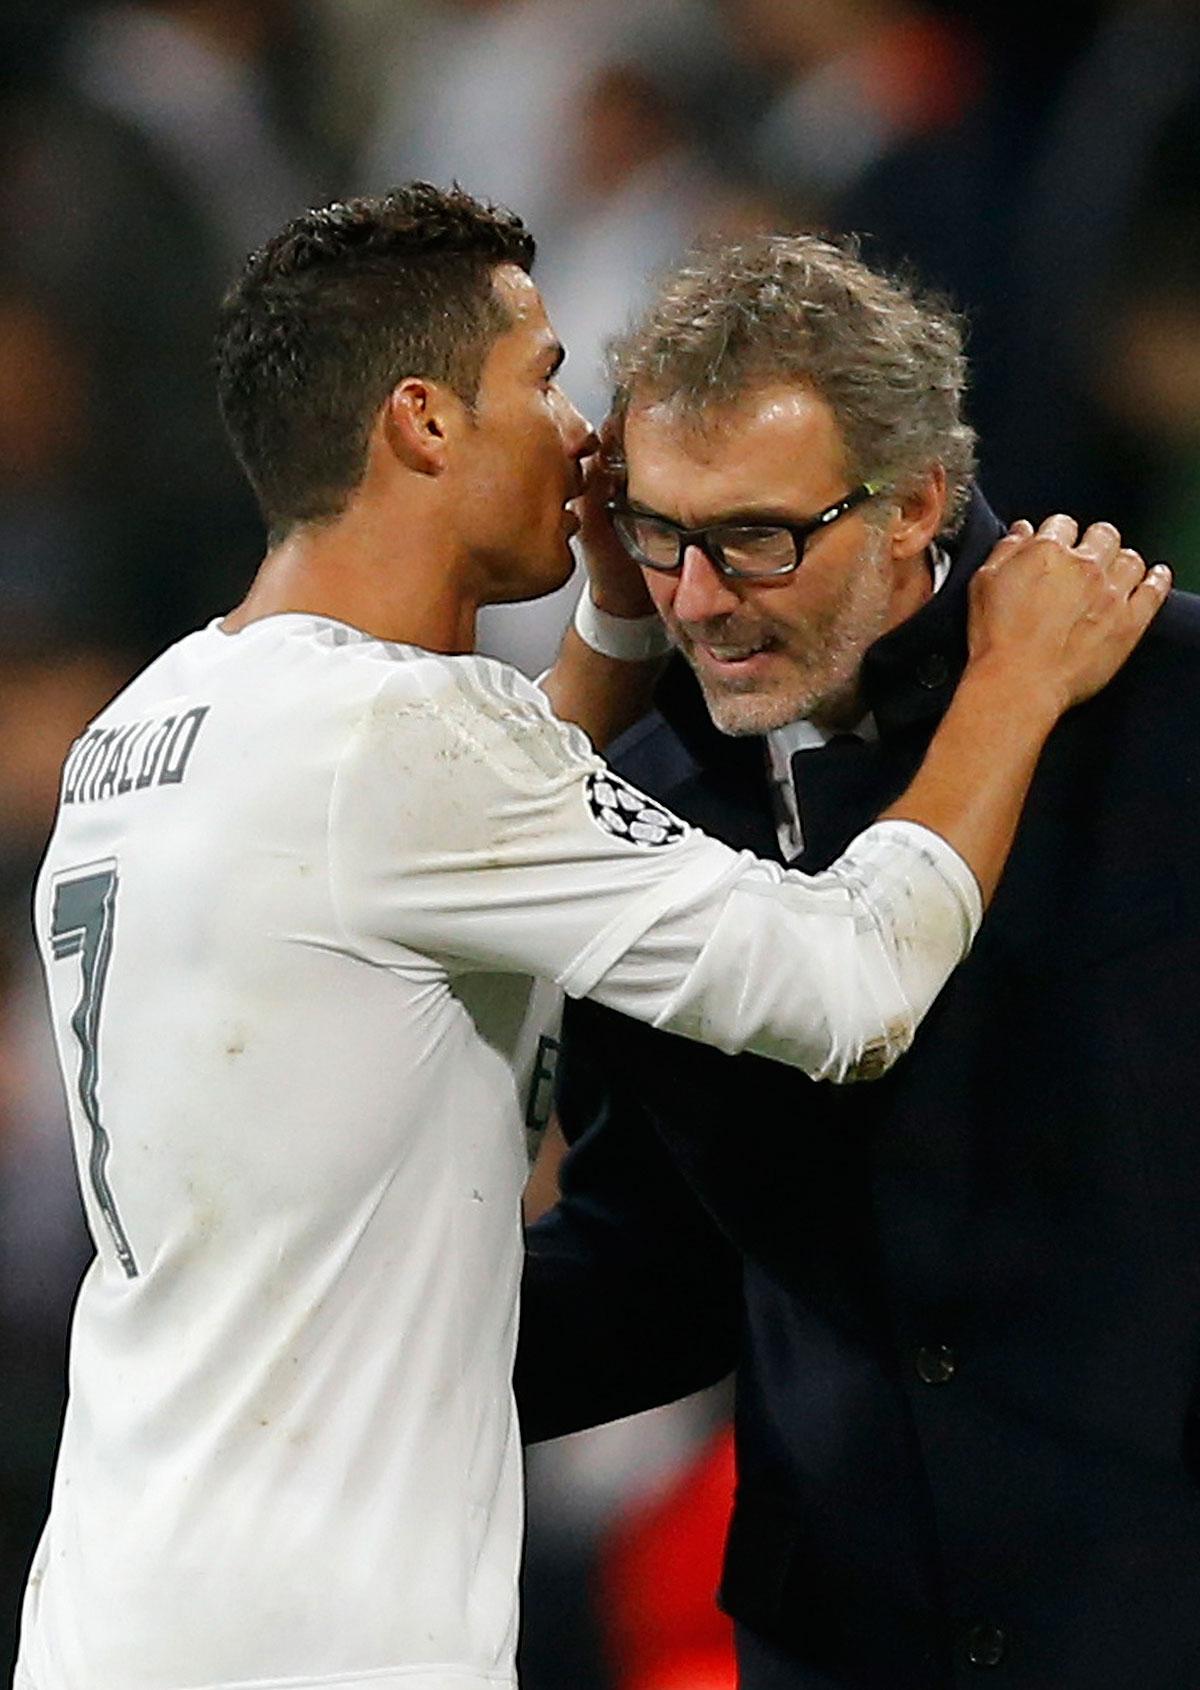 Ronaldo i samspråk med PSG-tränaren vid tidigare mötet.